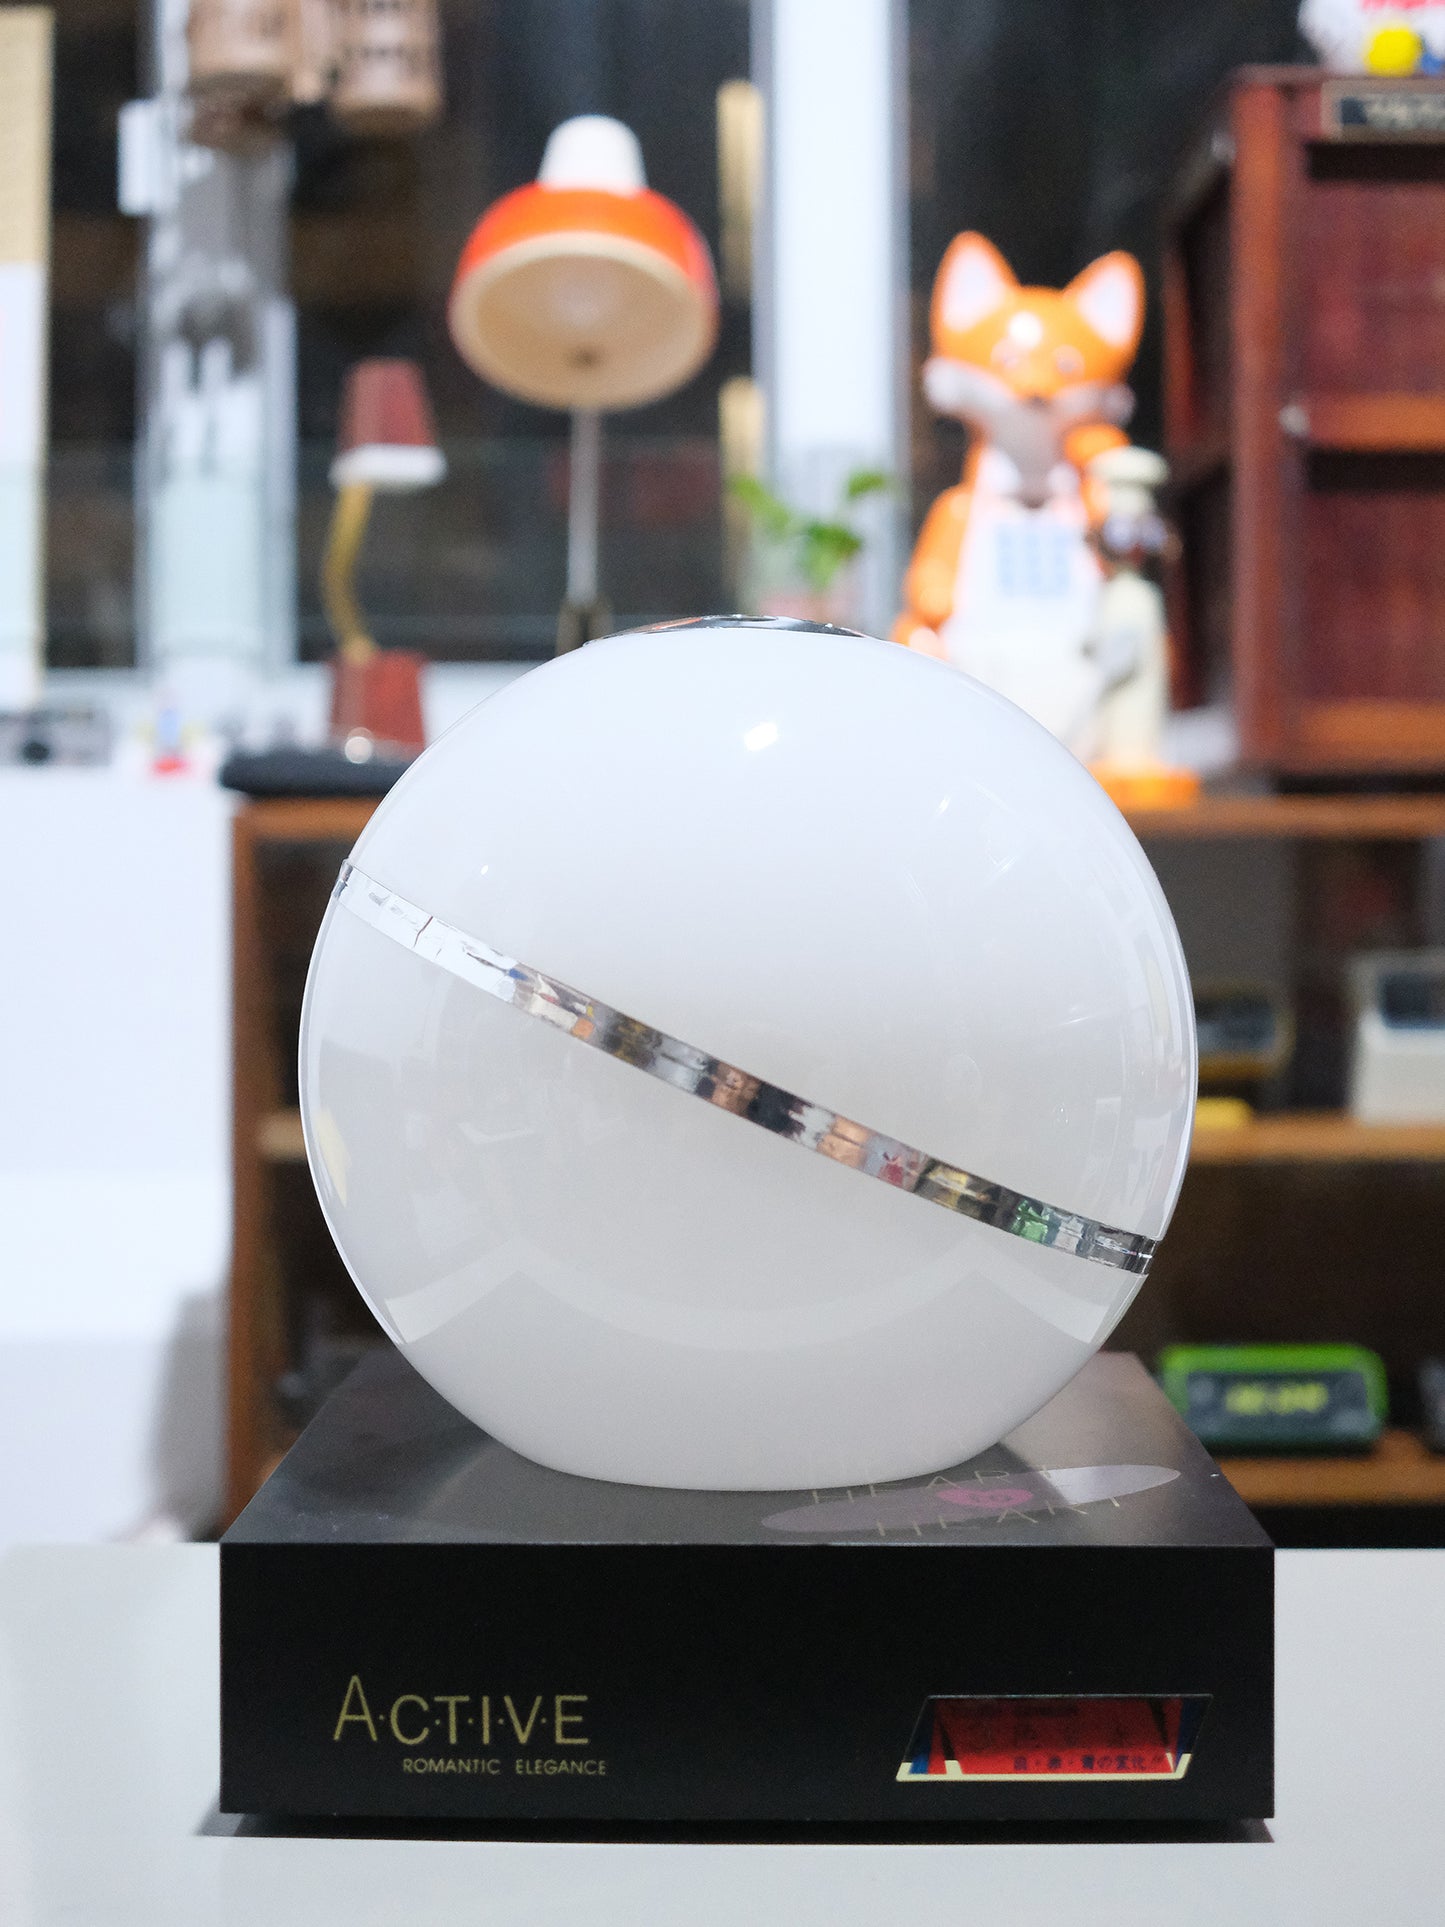 日本 昭和 圓形球狀 Touch Sensor Light 三色 觸控感應燈 擡燈 Lamp